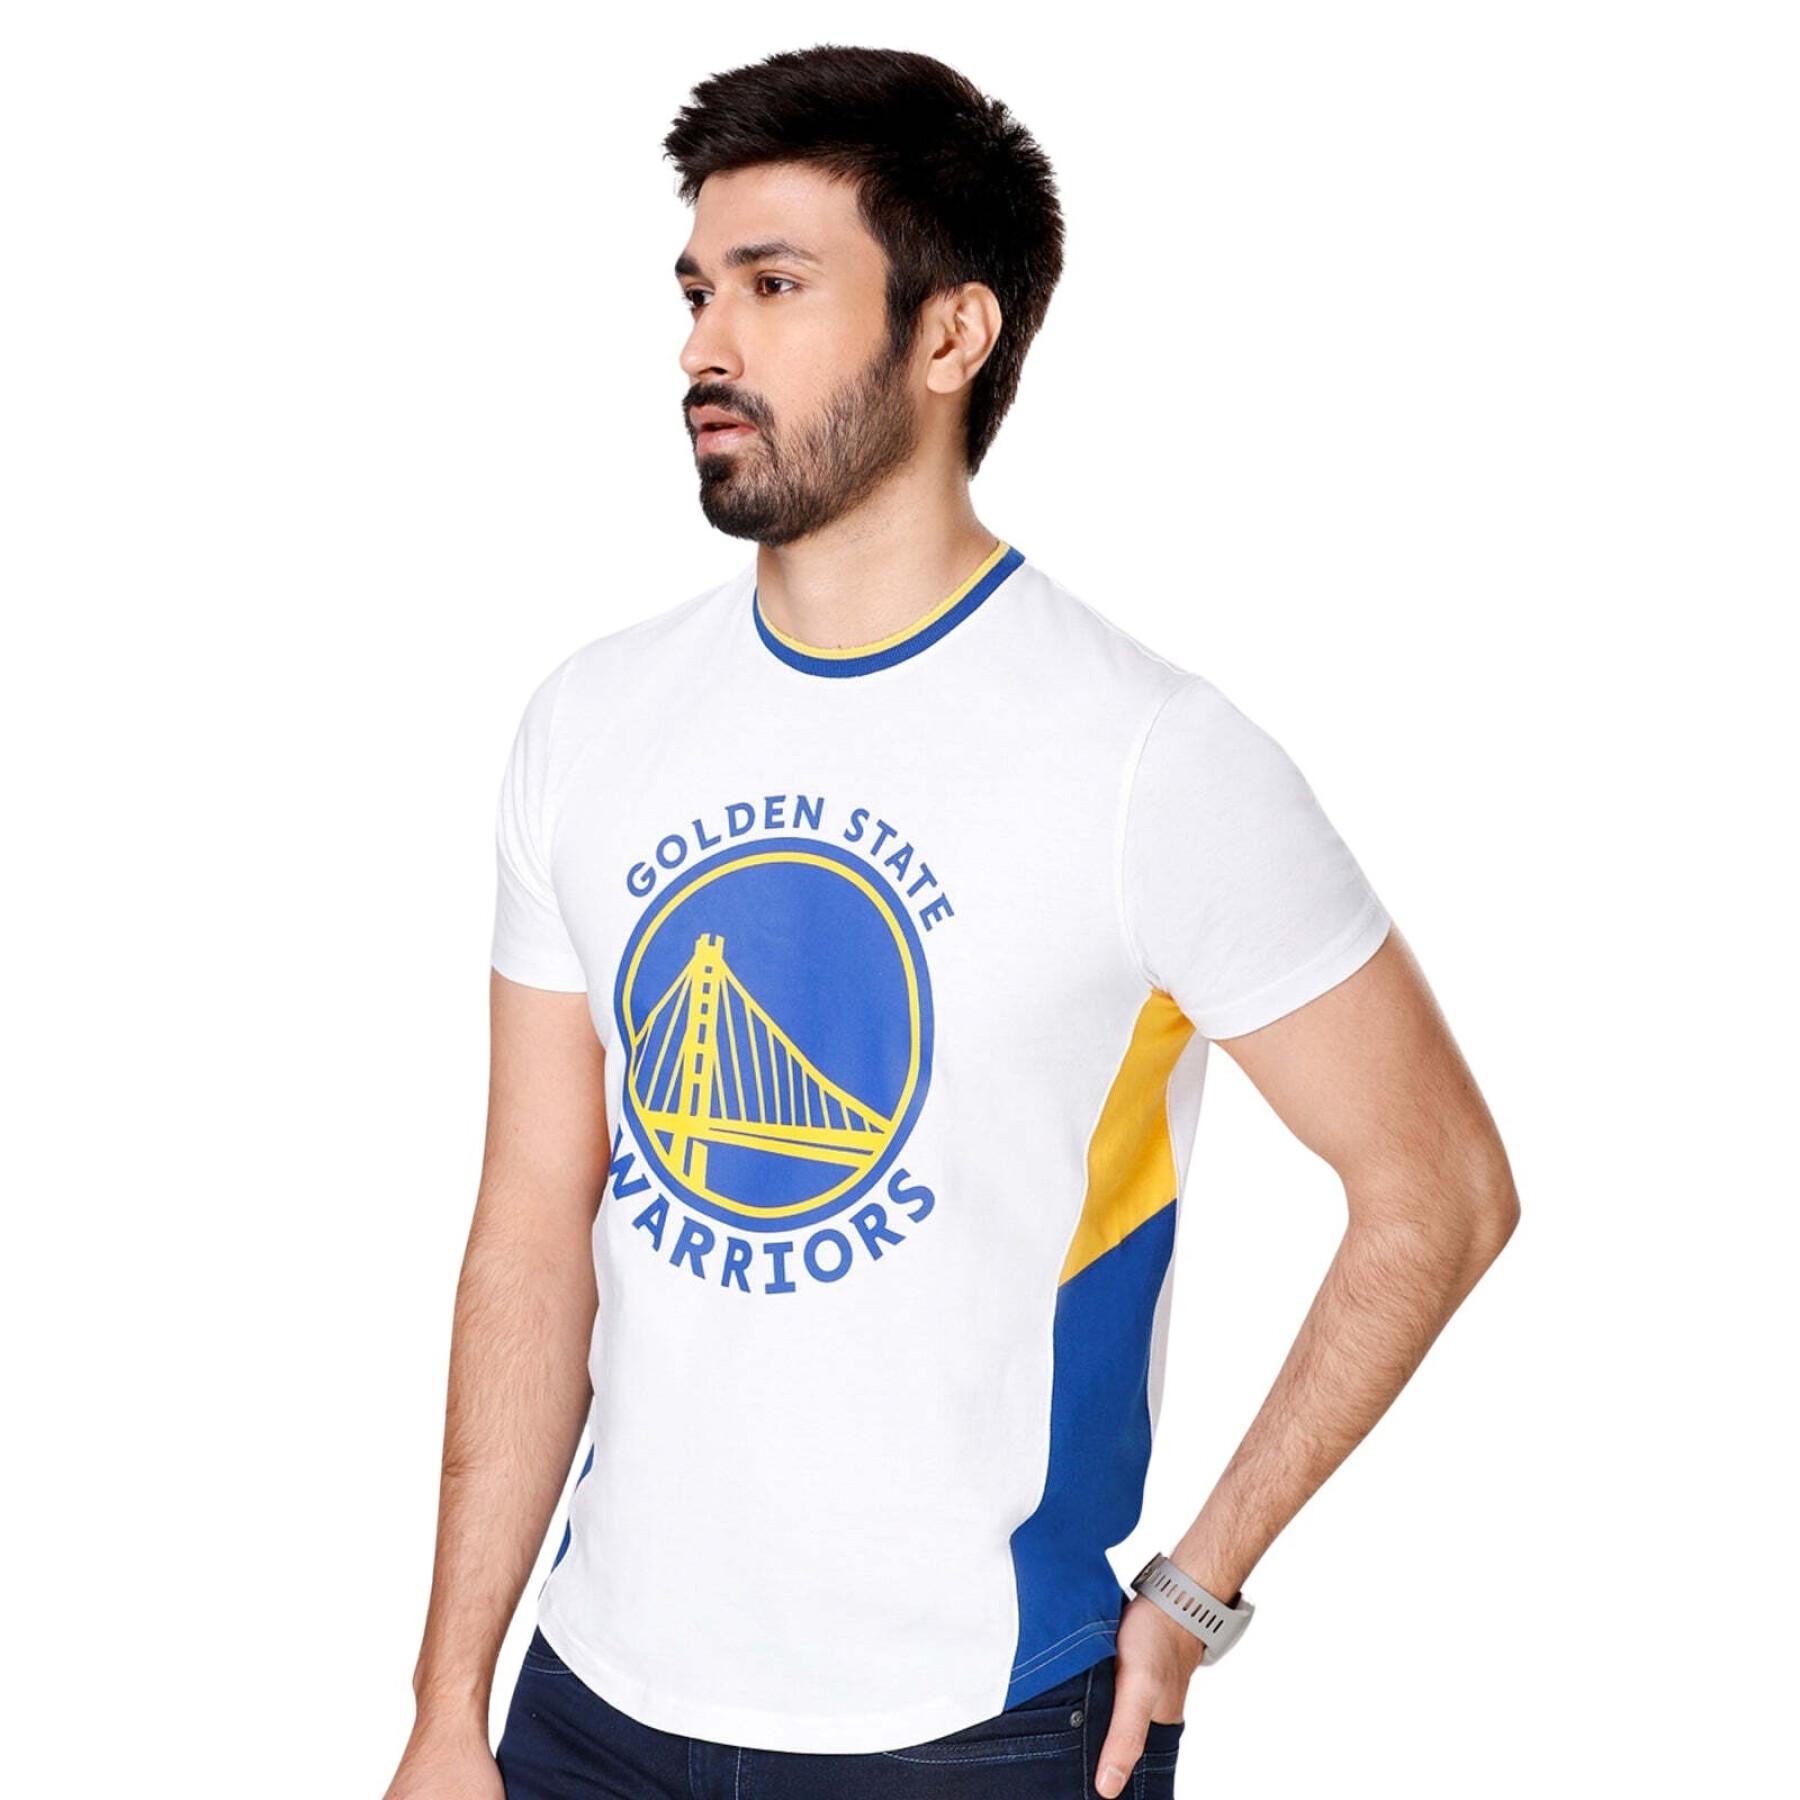 T-Shirt NBA Golden State Warriors